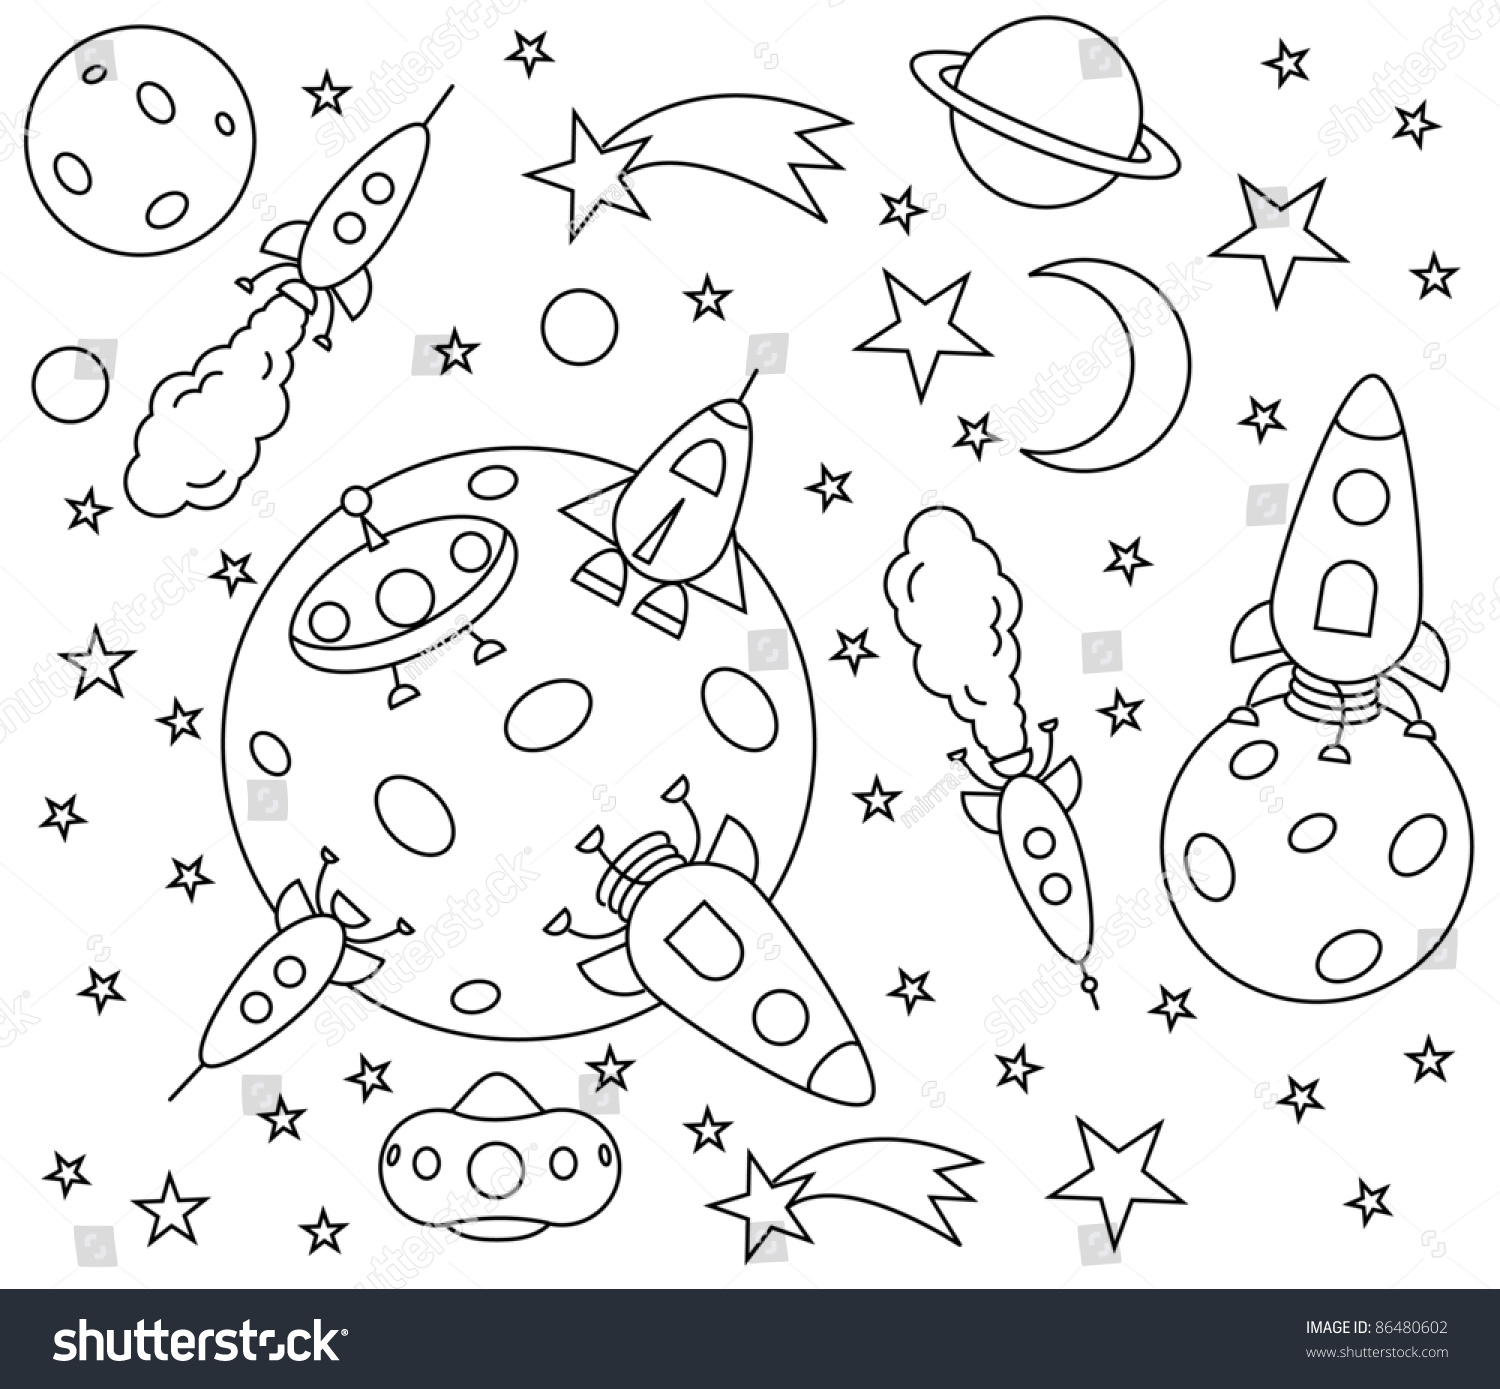 День космонавтики задания для детей